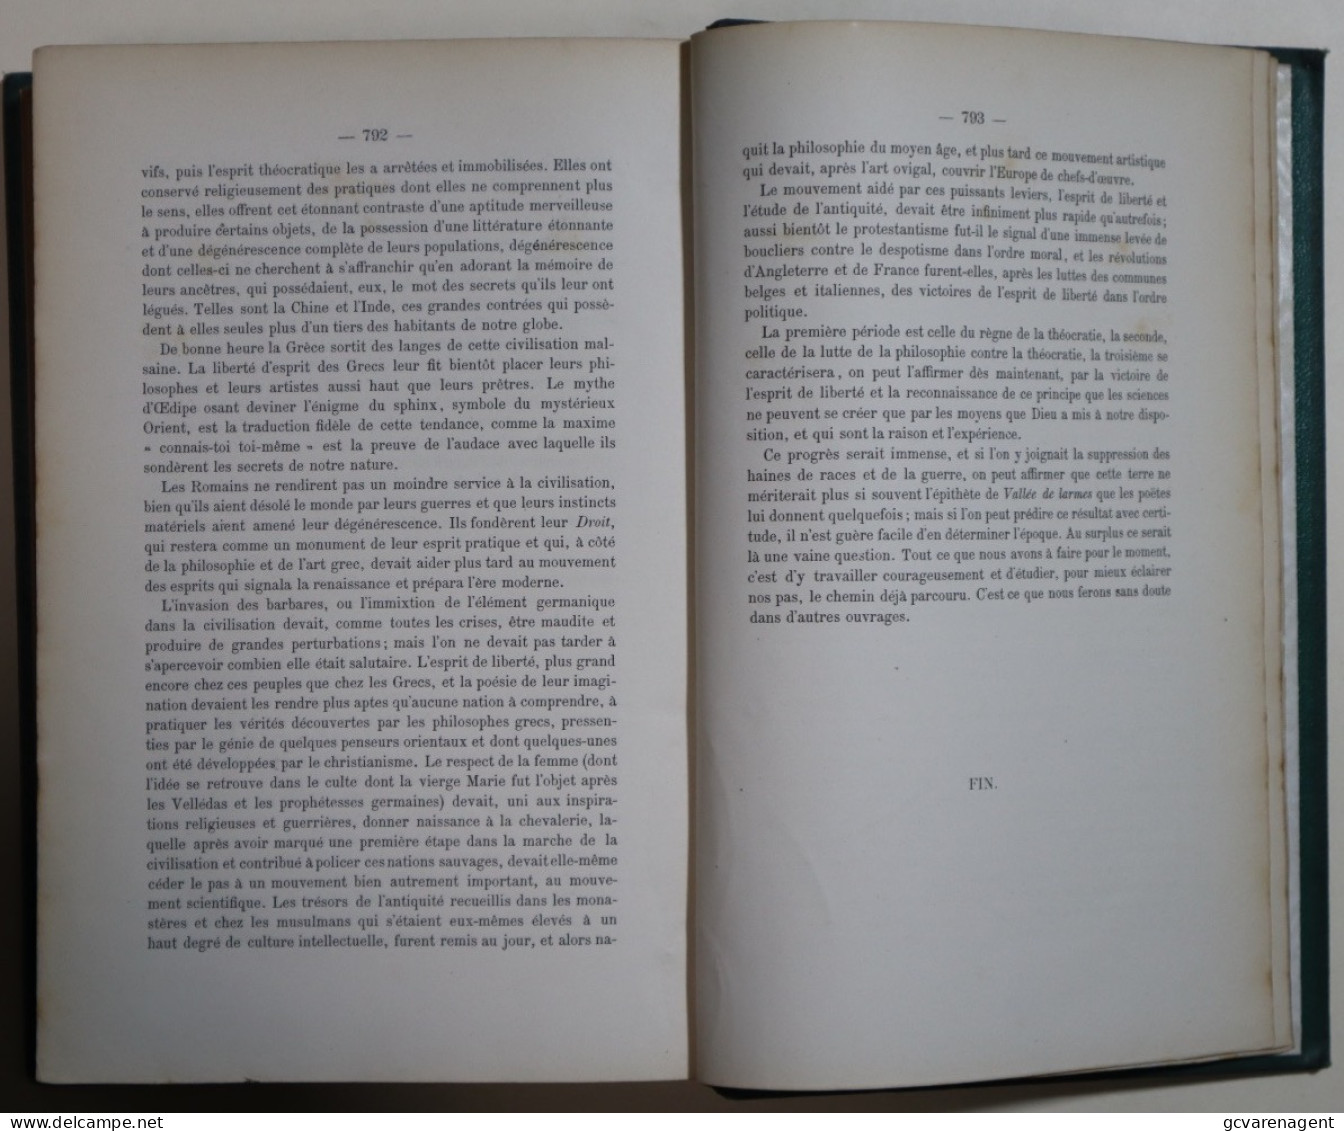 L'HOMME PROBLEMES ET MERVEILLES DE NATURE HUMAINE PAR W.F.A. ZIMMERMAN 1865 -796 PAGES BON ETAT 250X170X40MM VOIR IMAGES